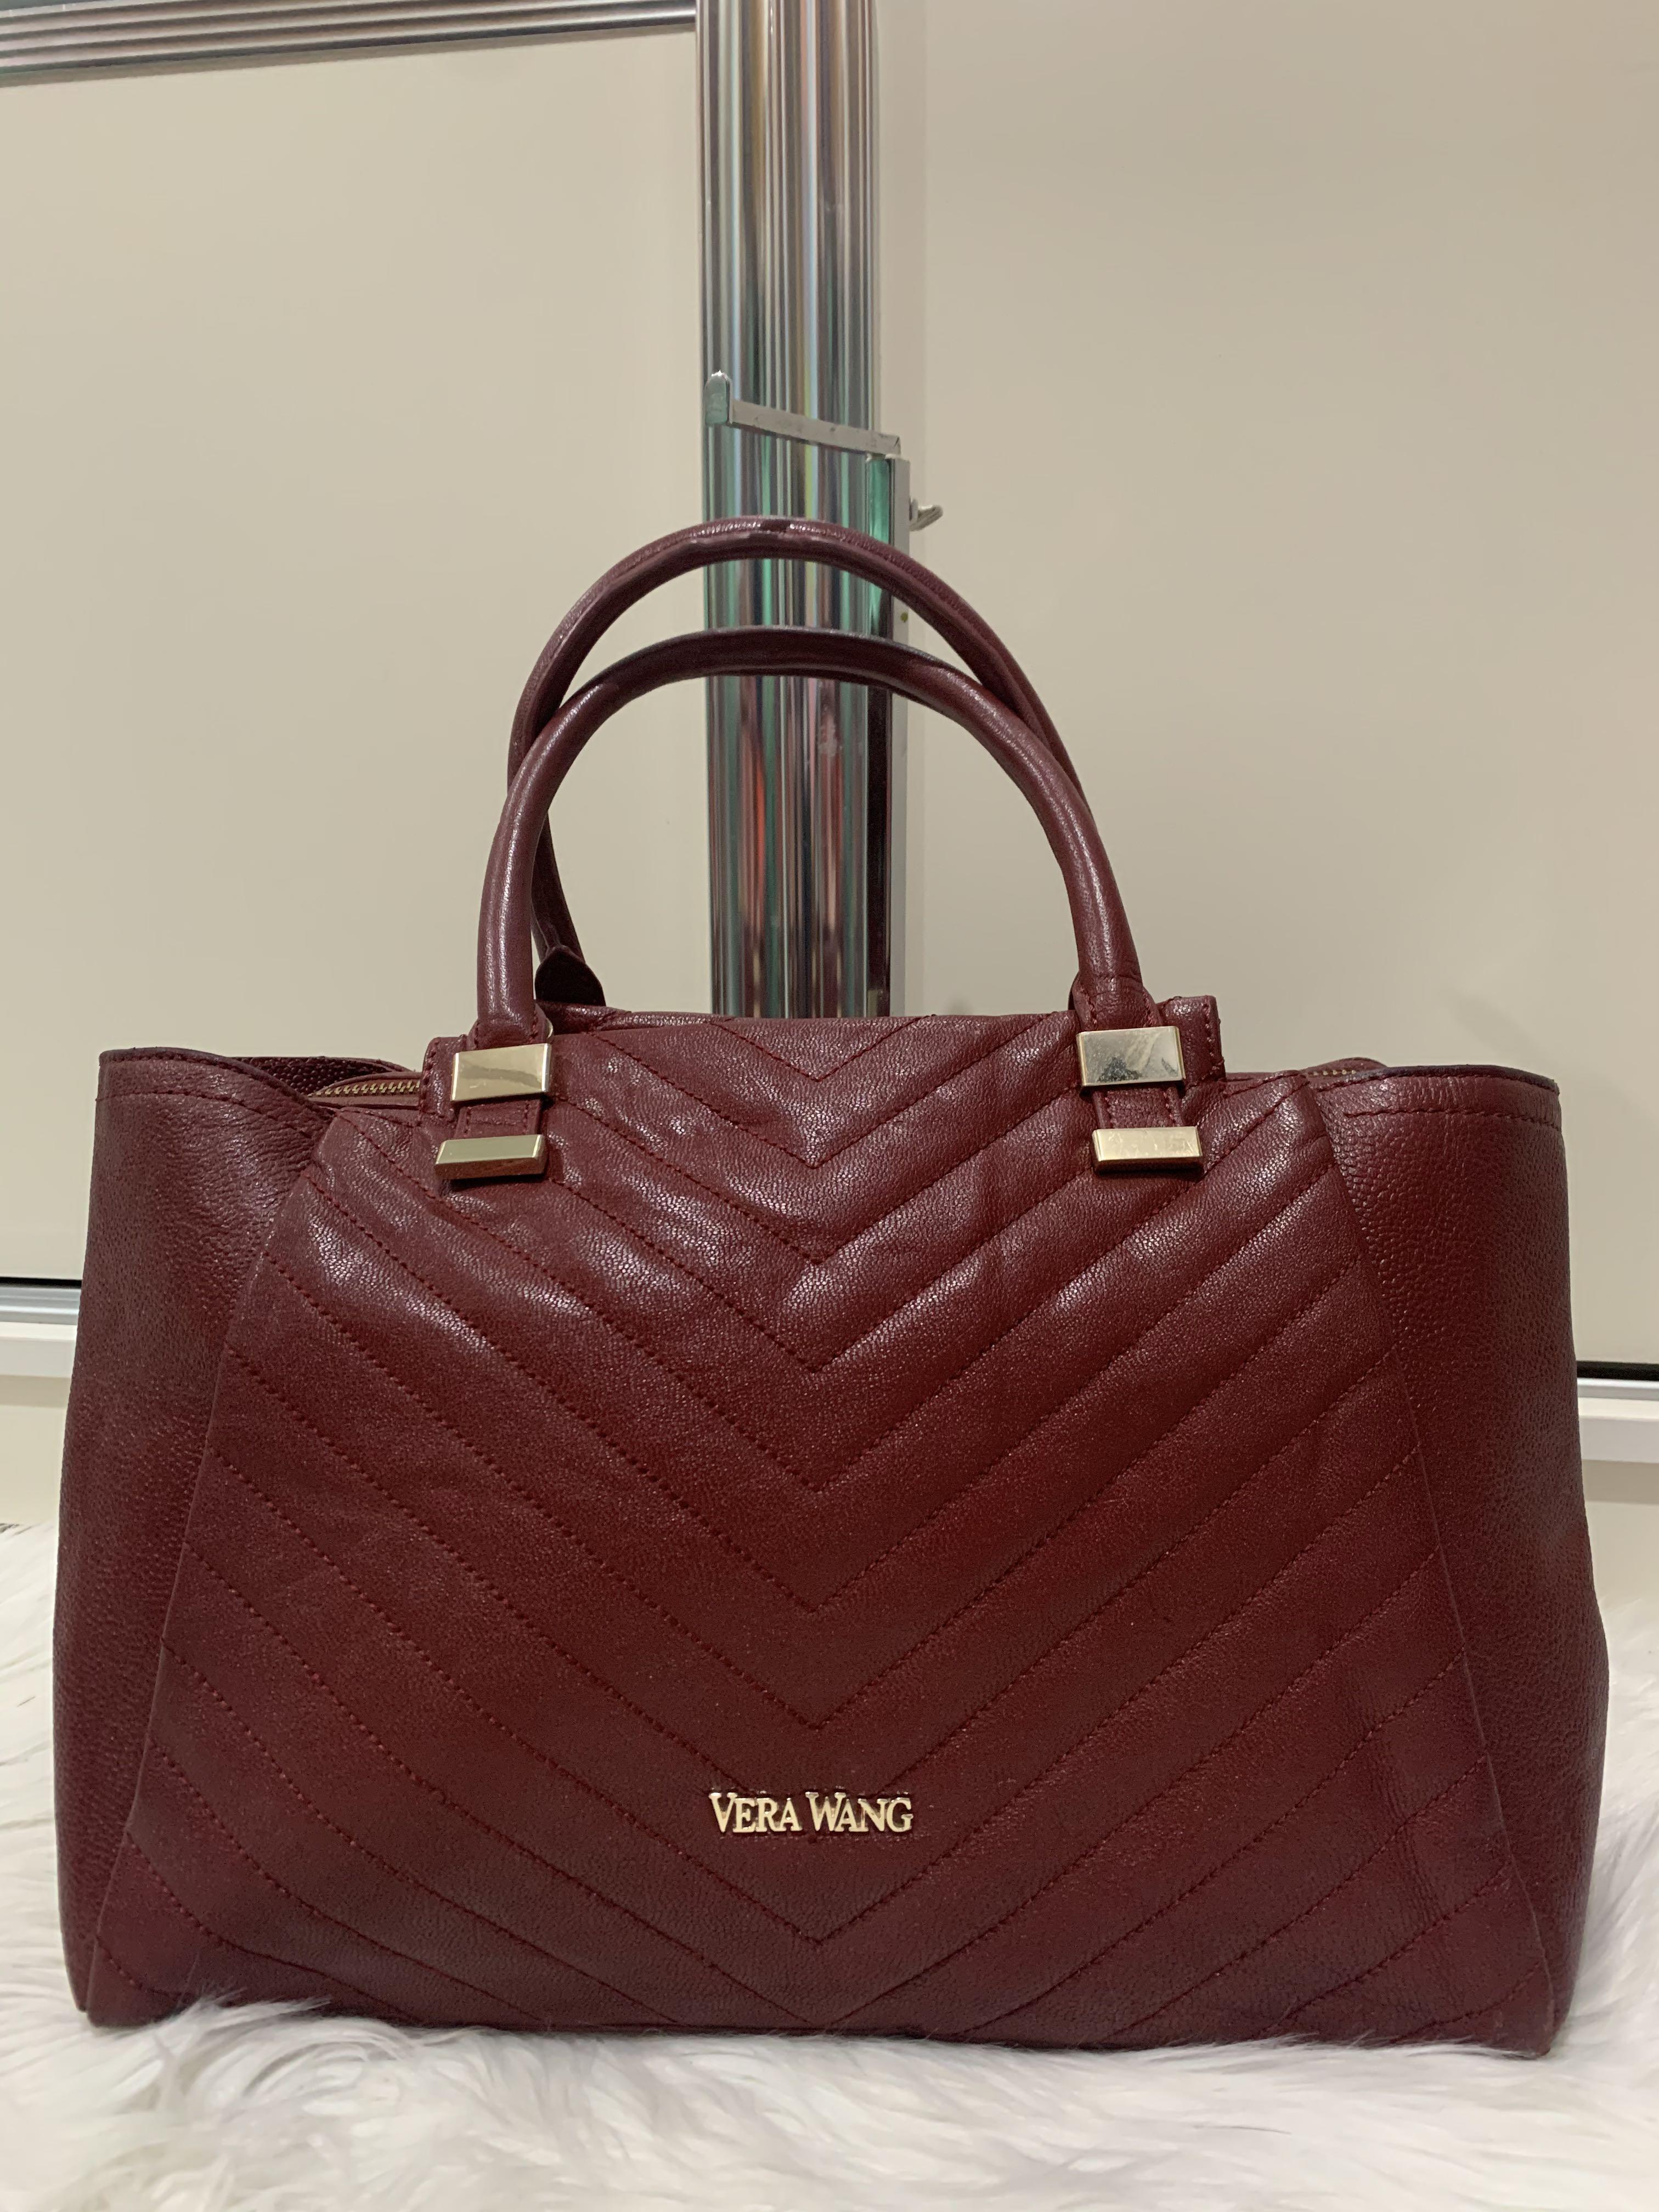 Vera Wang purse | Vera wang purses, Vera wang, Vera wang clutch